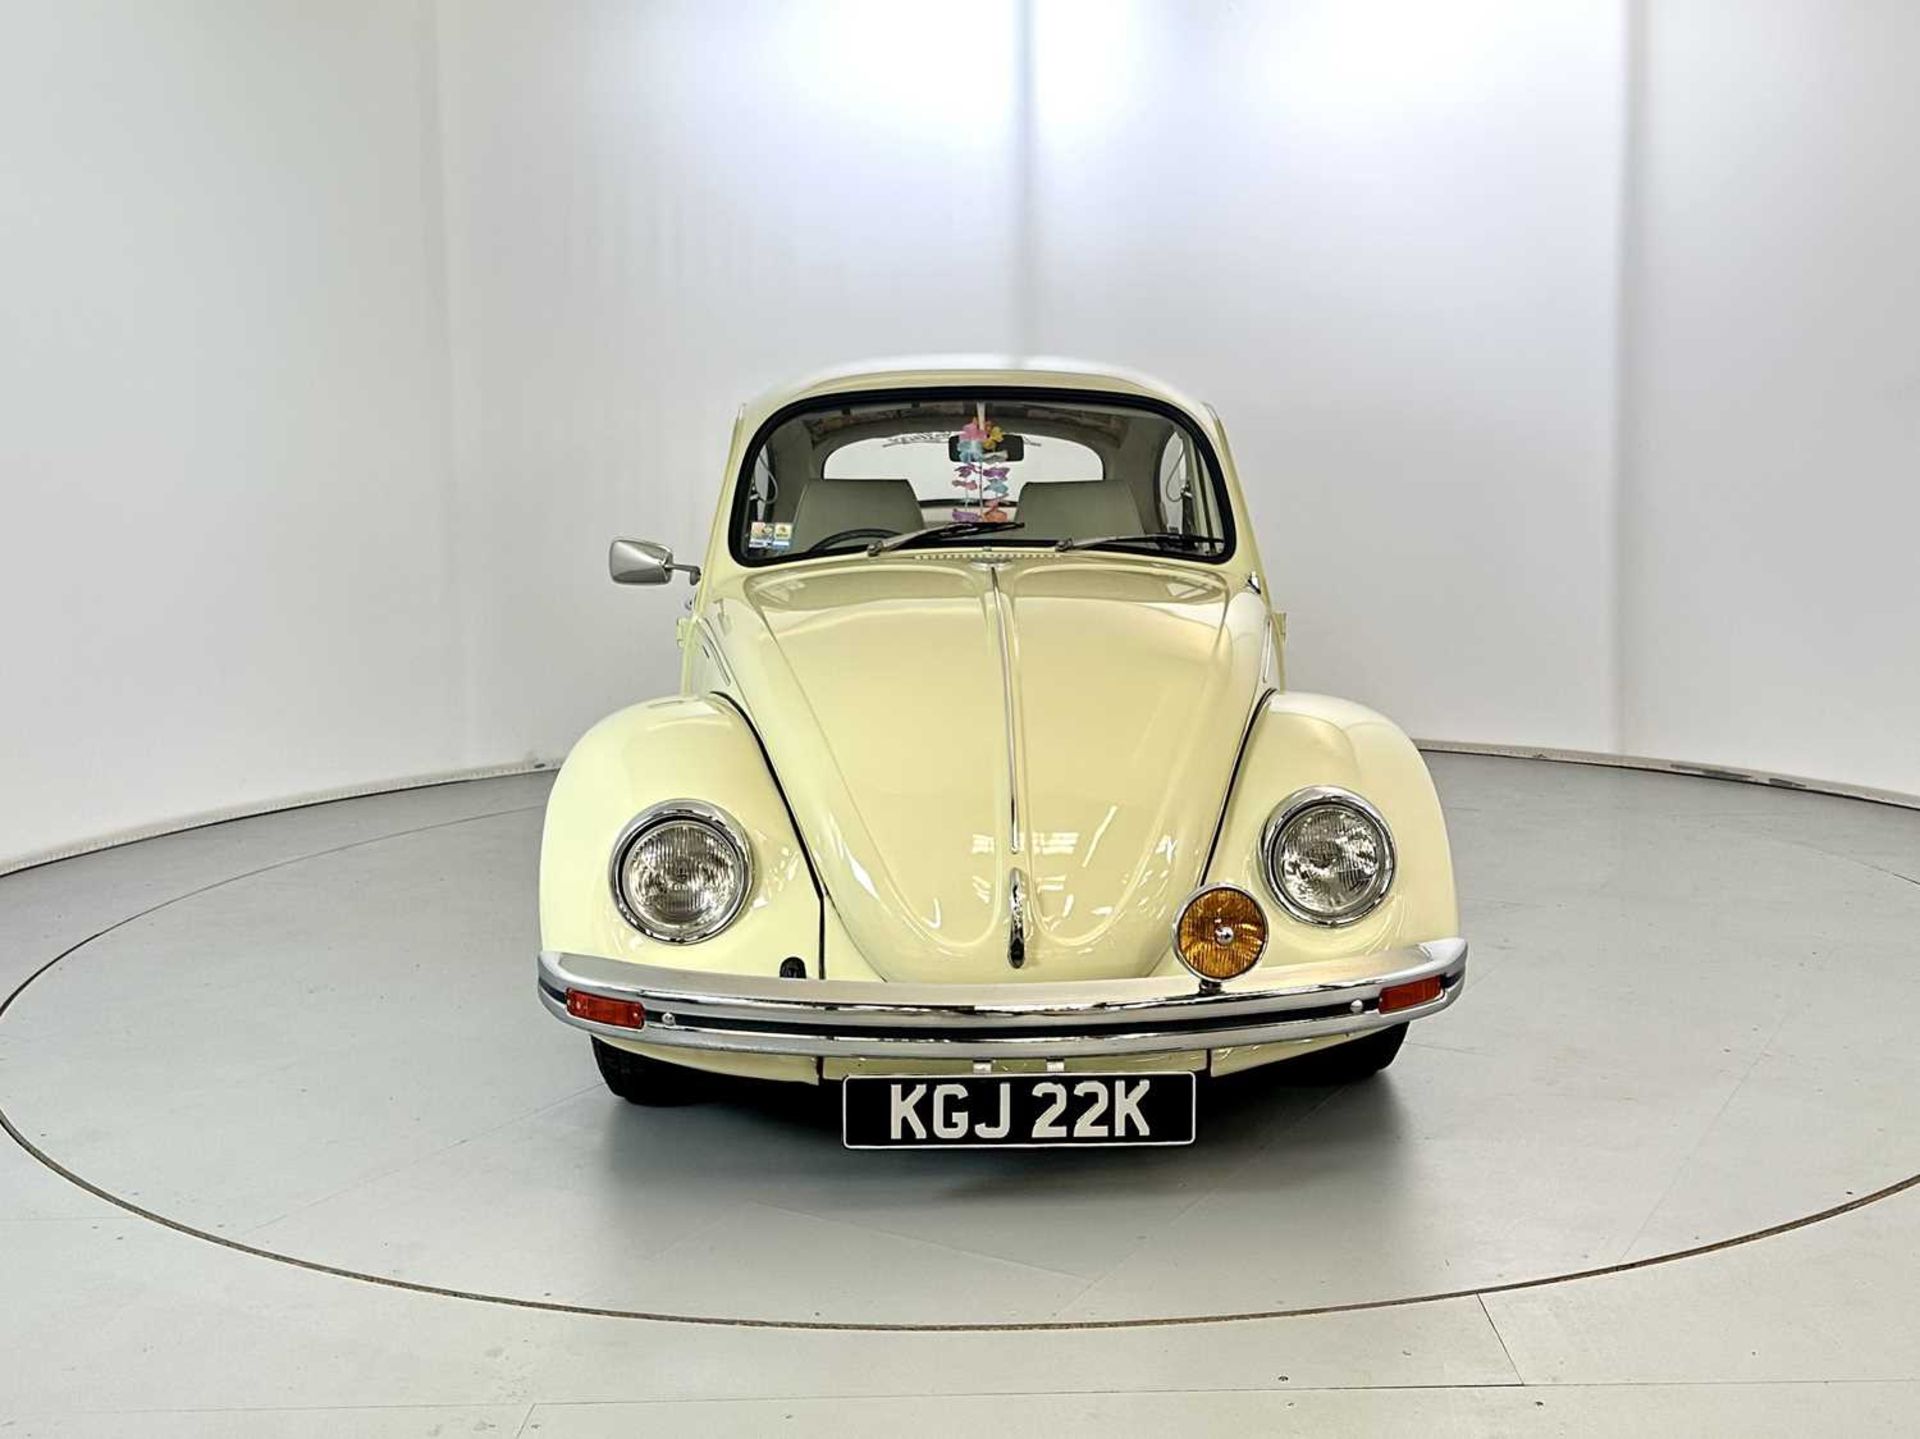 1971 Volkswagen Beetle - Image 2 of 30